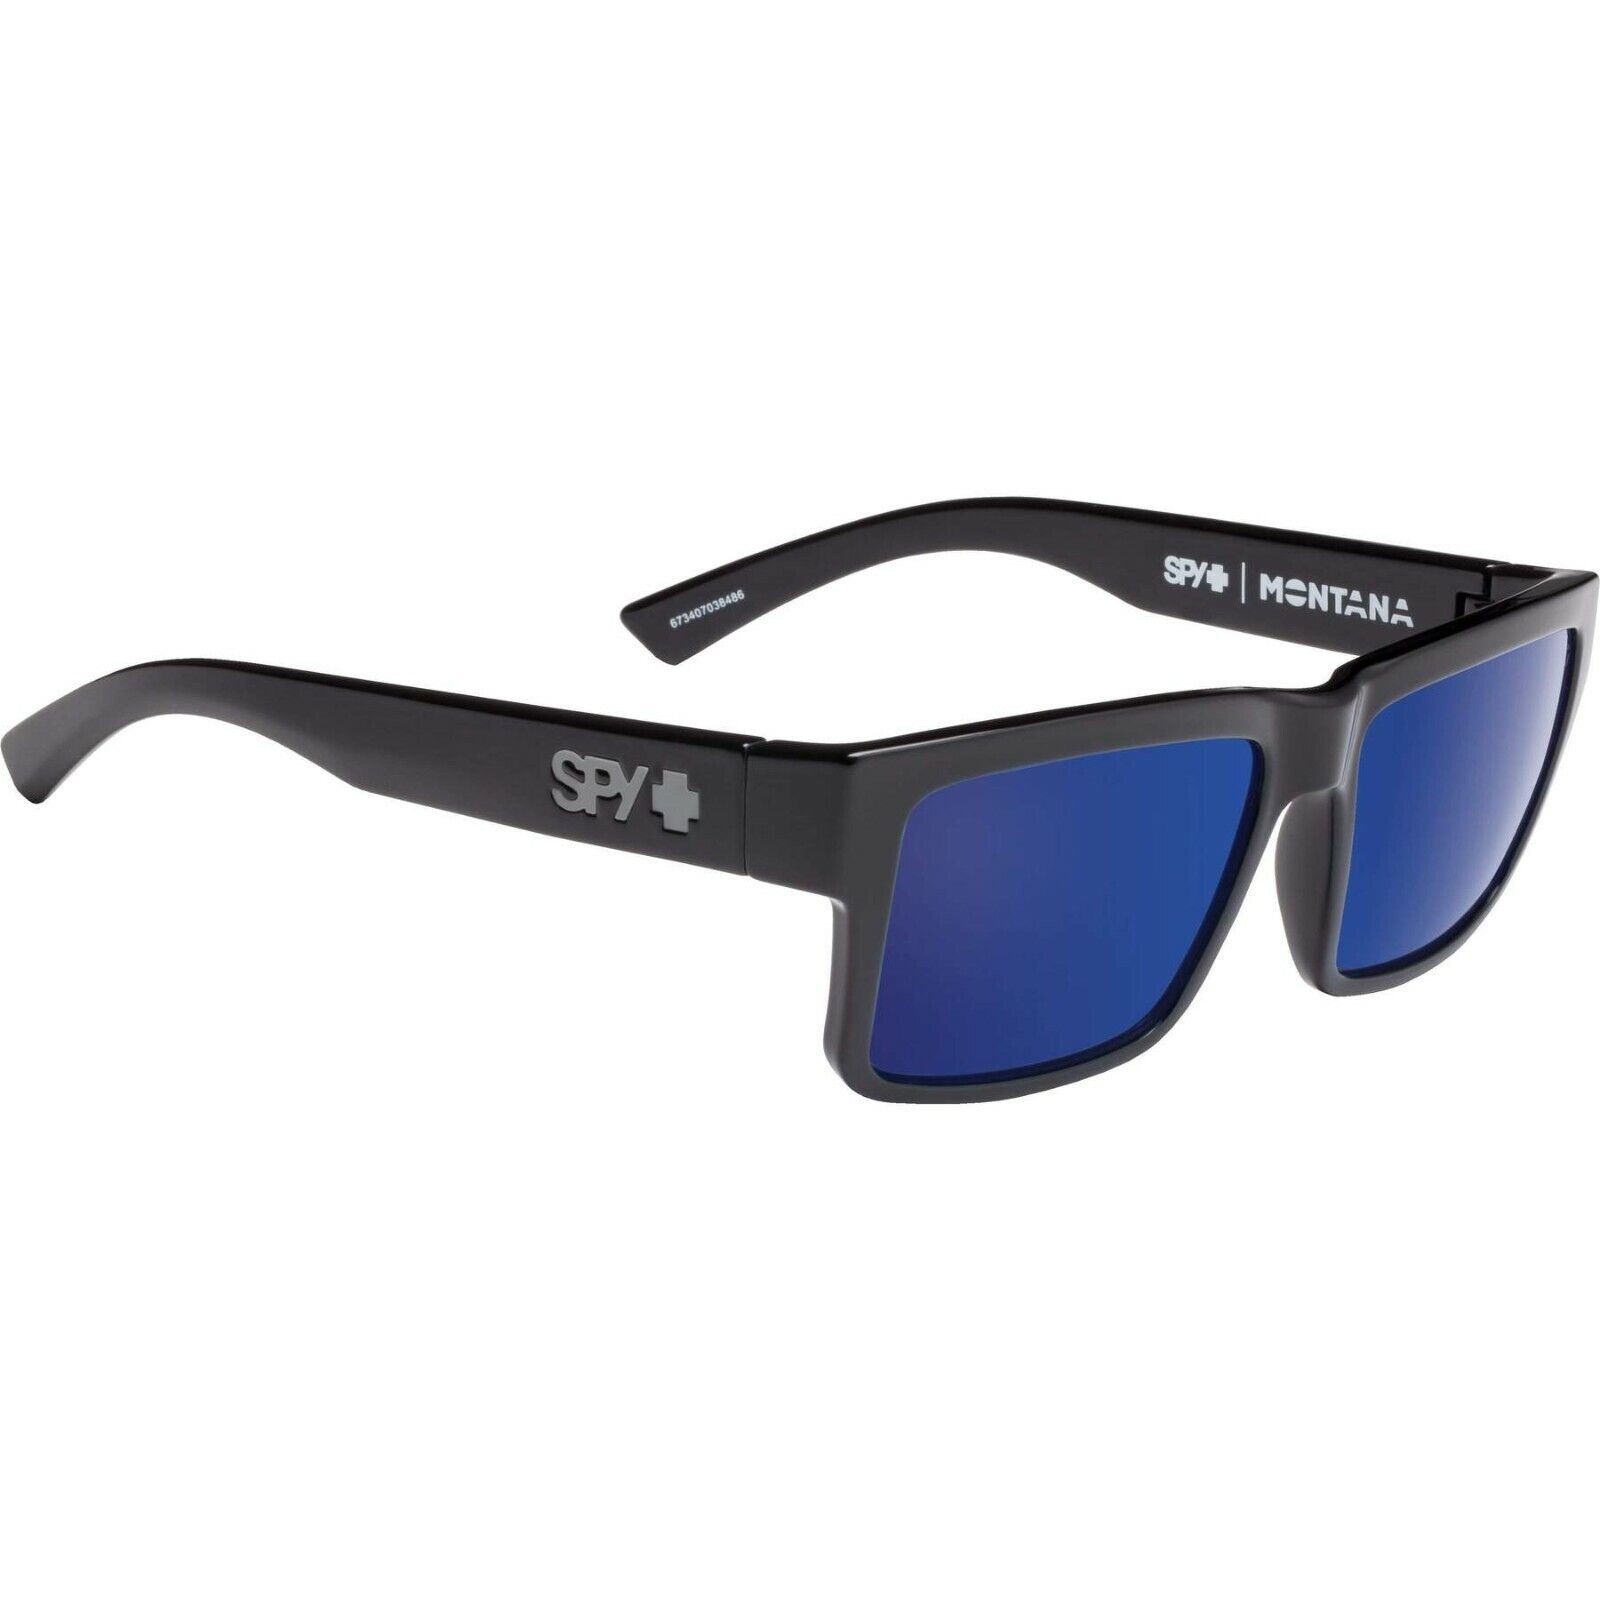 SPY Optic MONTANA Sunglasses Polarized Gloss Black - Gray Green Blue 3DAY  SHIP | eBay